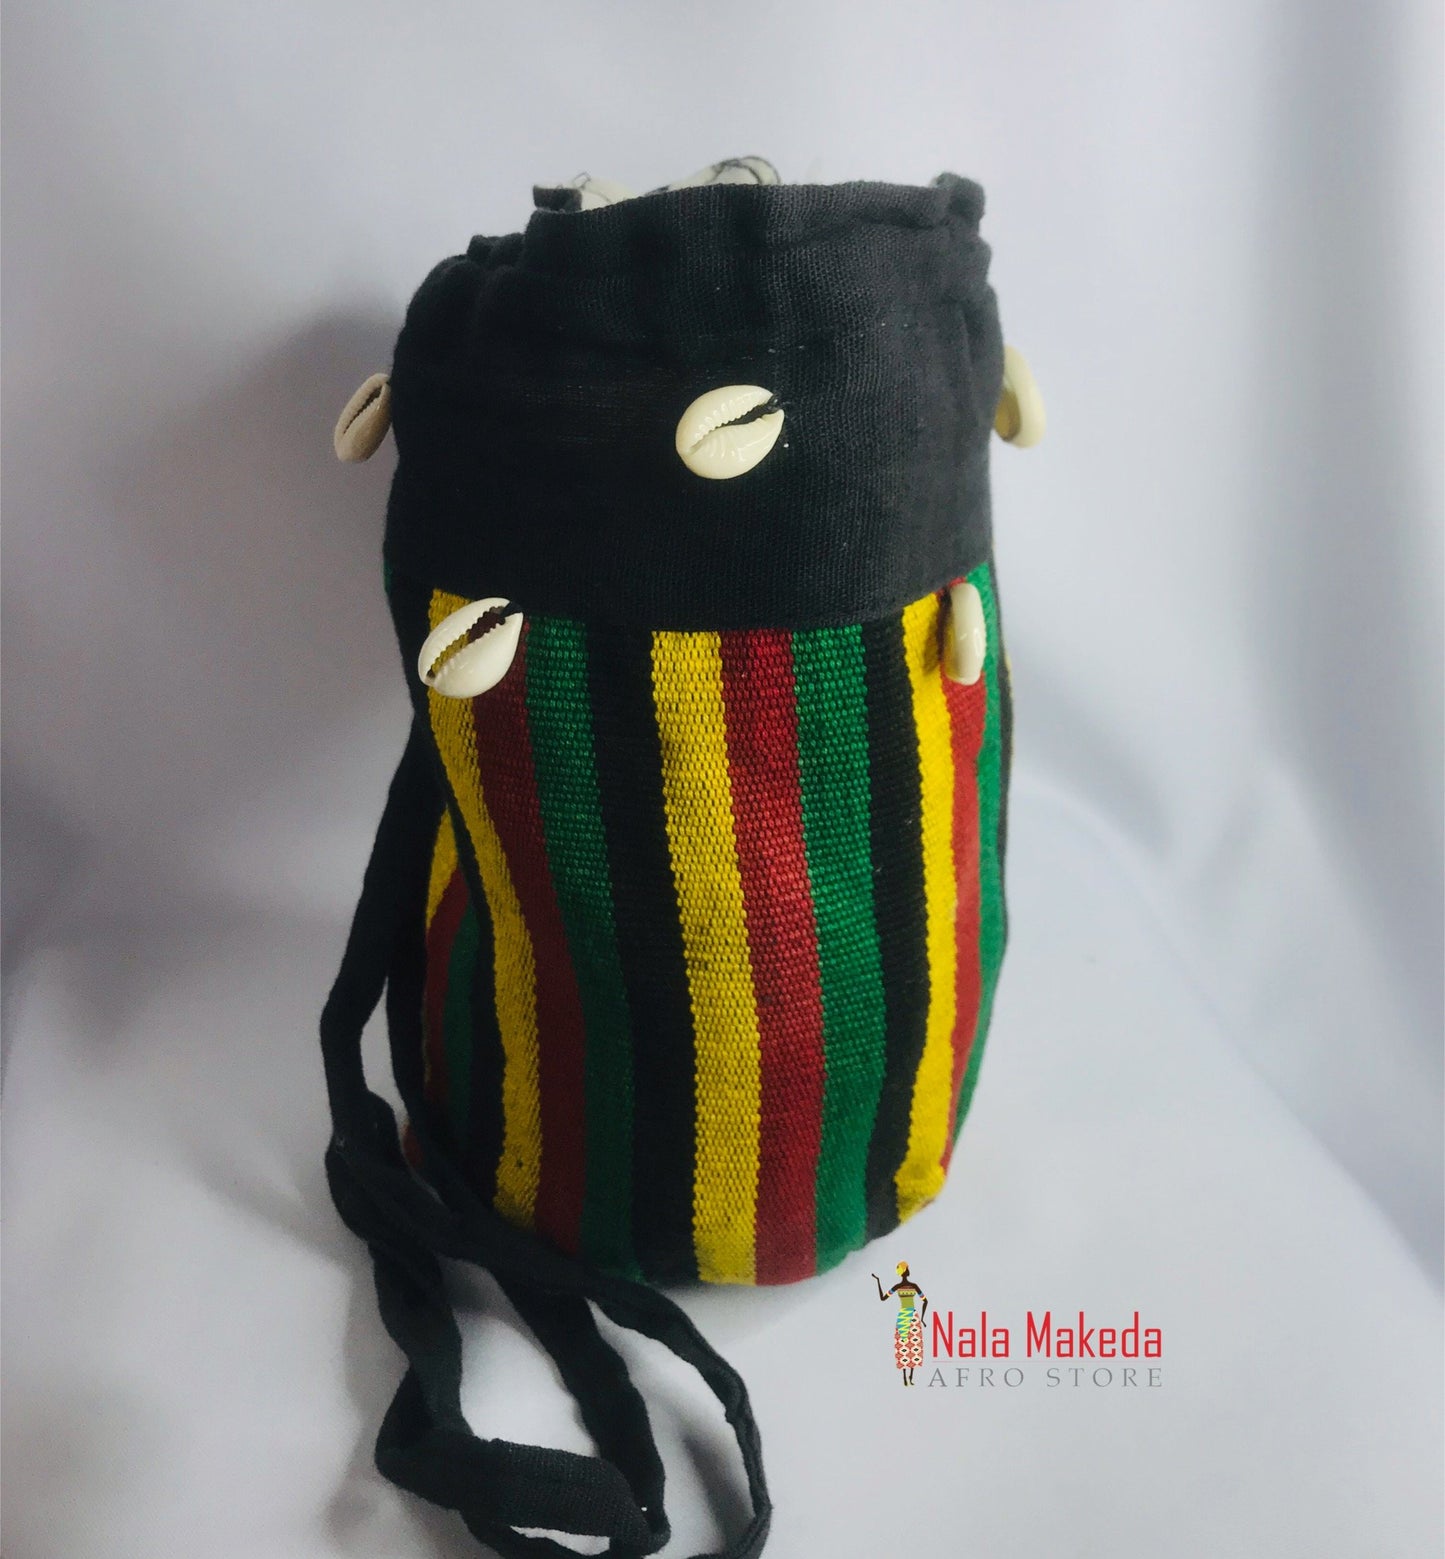 Panafrican Bags